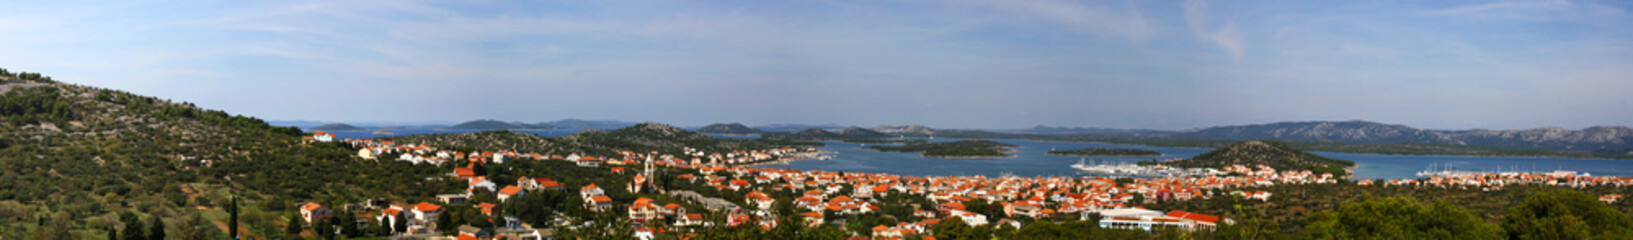 Panorama of town Murter on the island Murter, Croatia. 